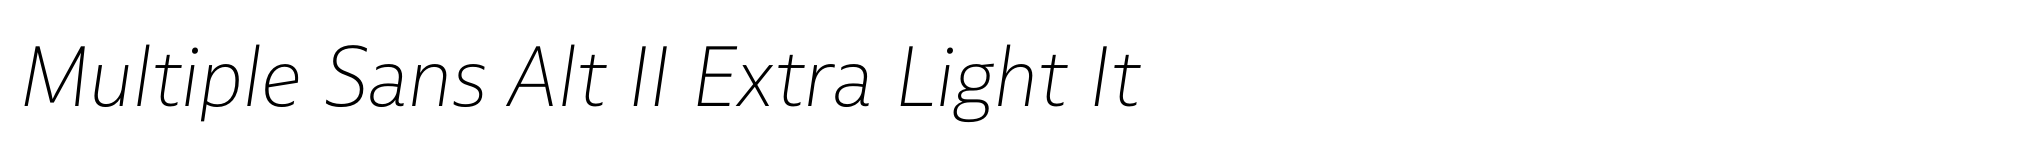 Multiple Sans Alt II Extra Light It image